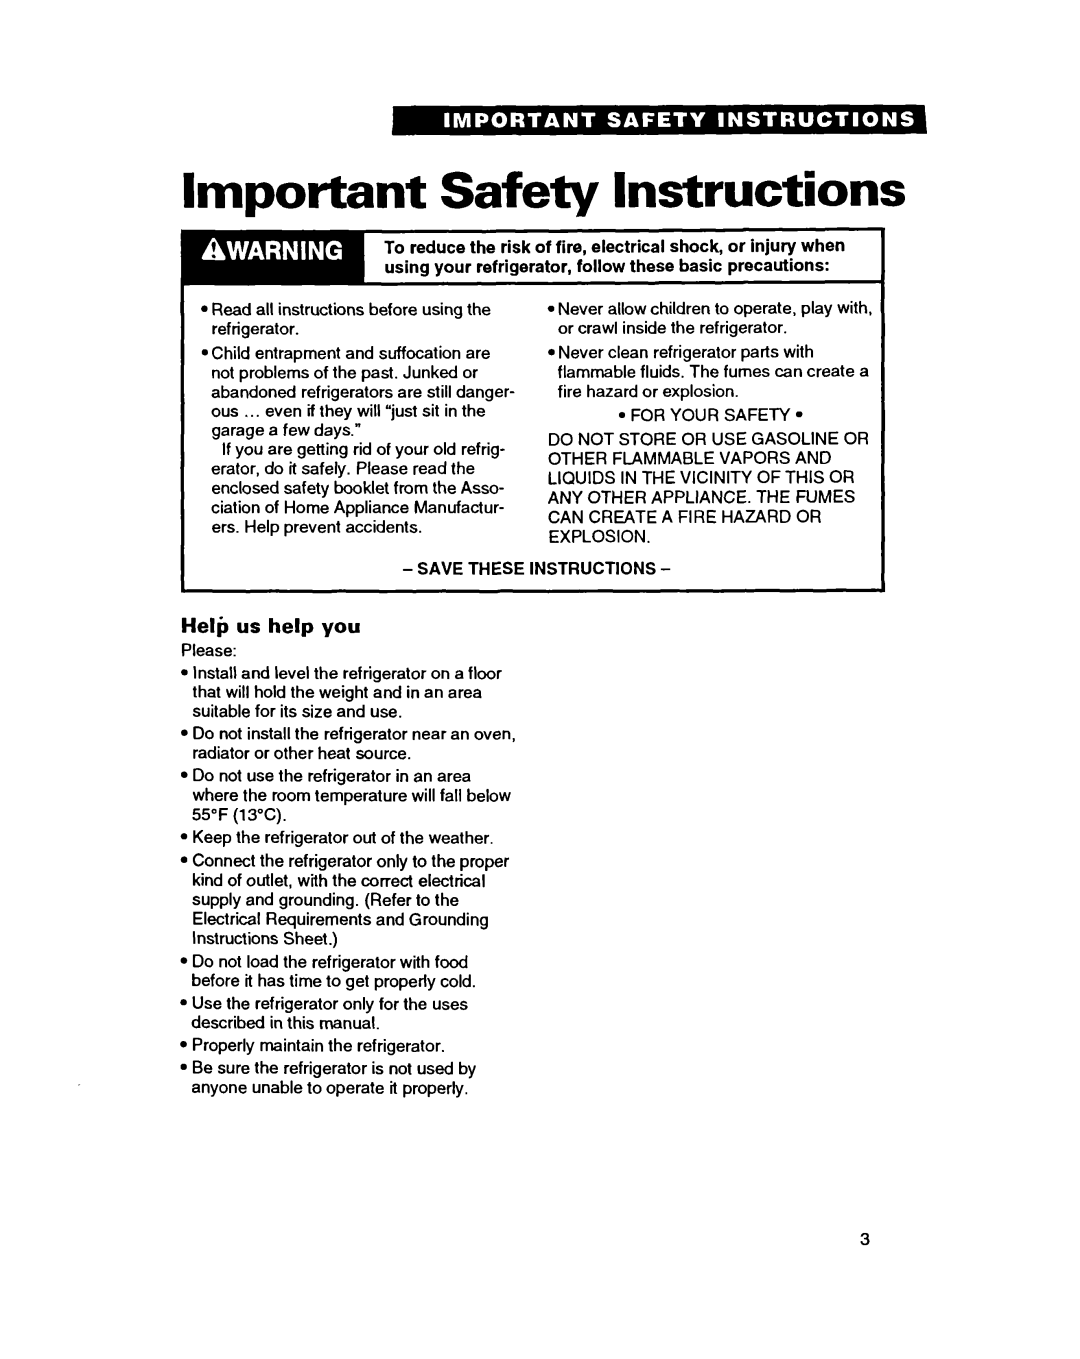 Whirlpool TT14HD, TT14DK important safety instructions Important Safety Instructions, Heli, us help you 